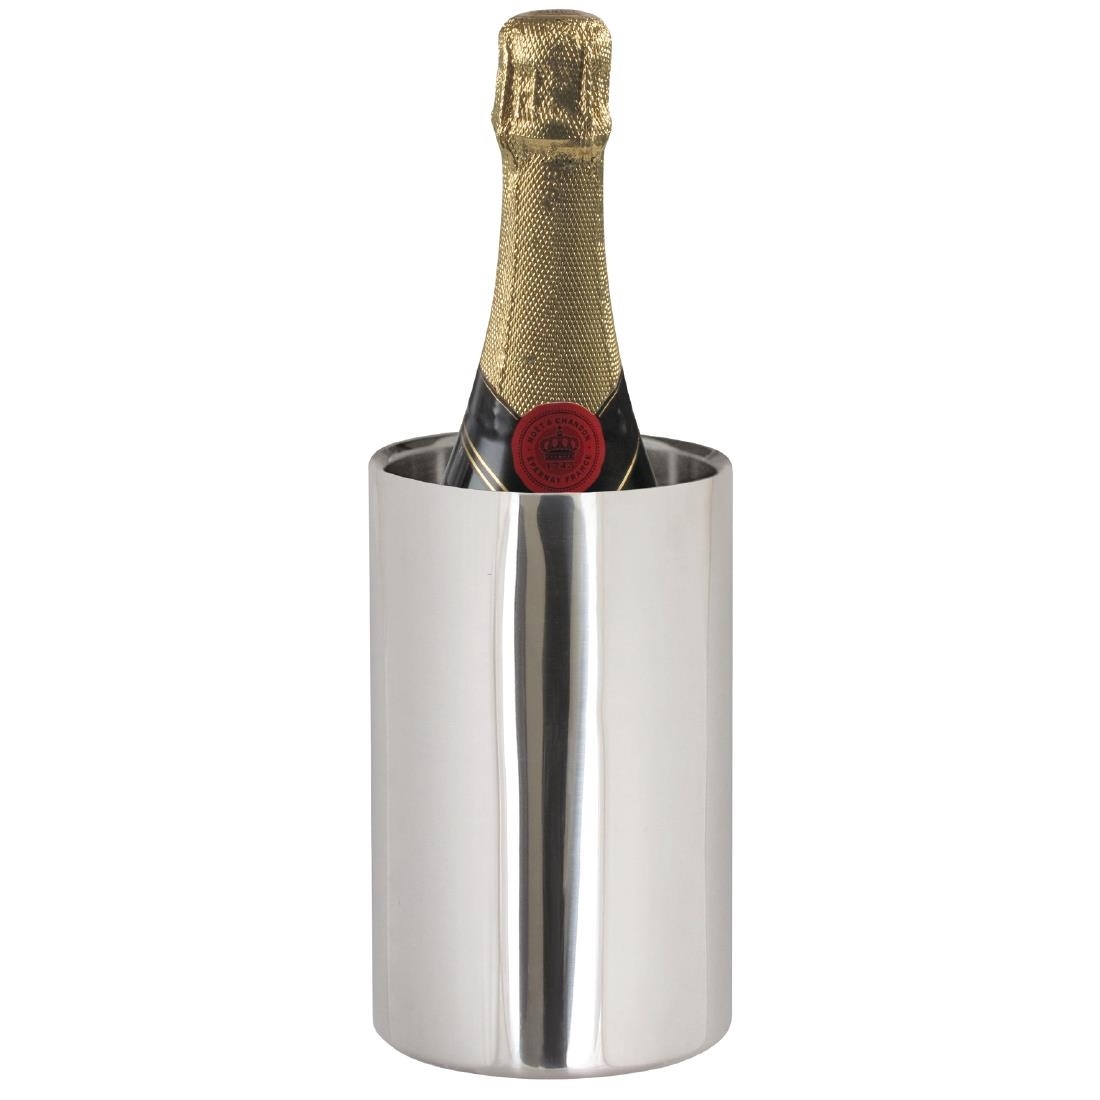 Wijnkoeler / Champagnekoeler - Gepolijst RVS - Ø12cm x 19,5(h)cm